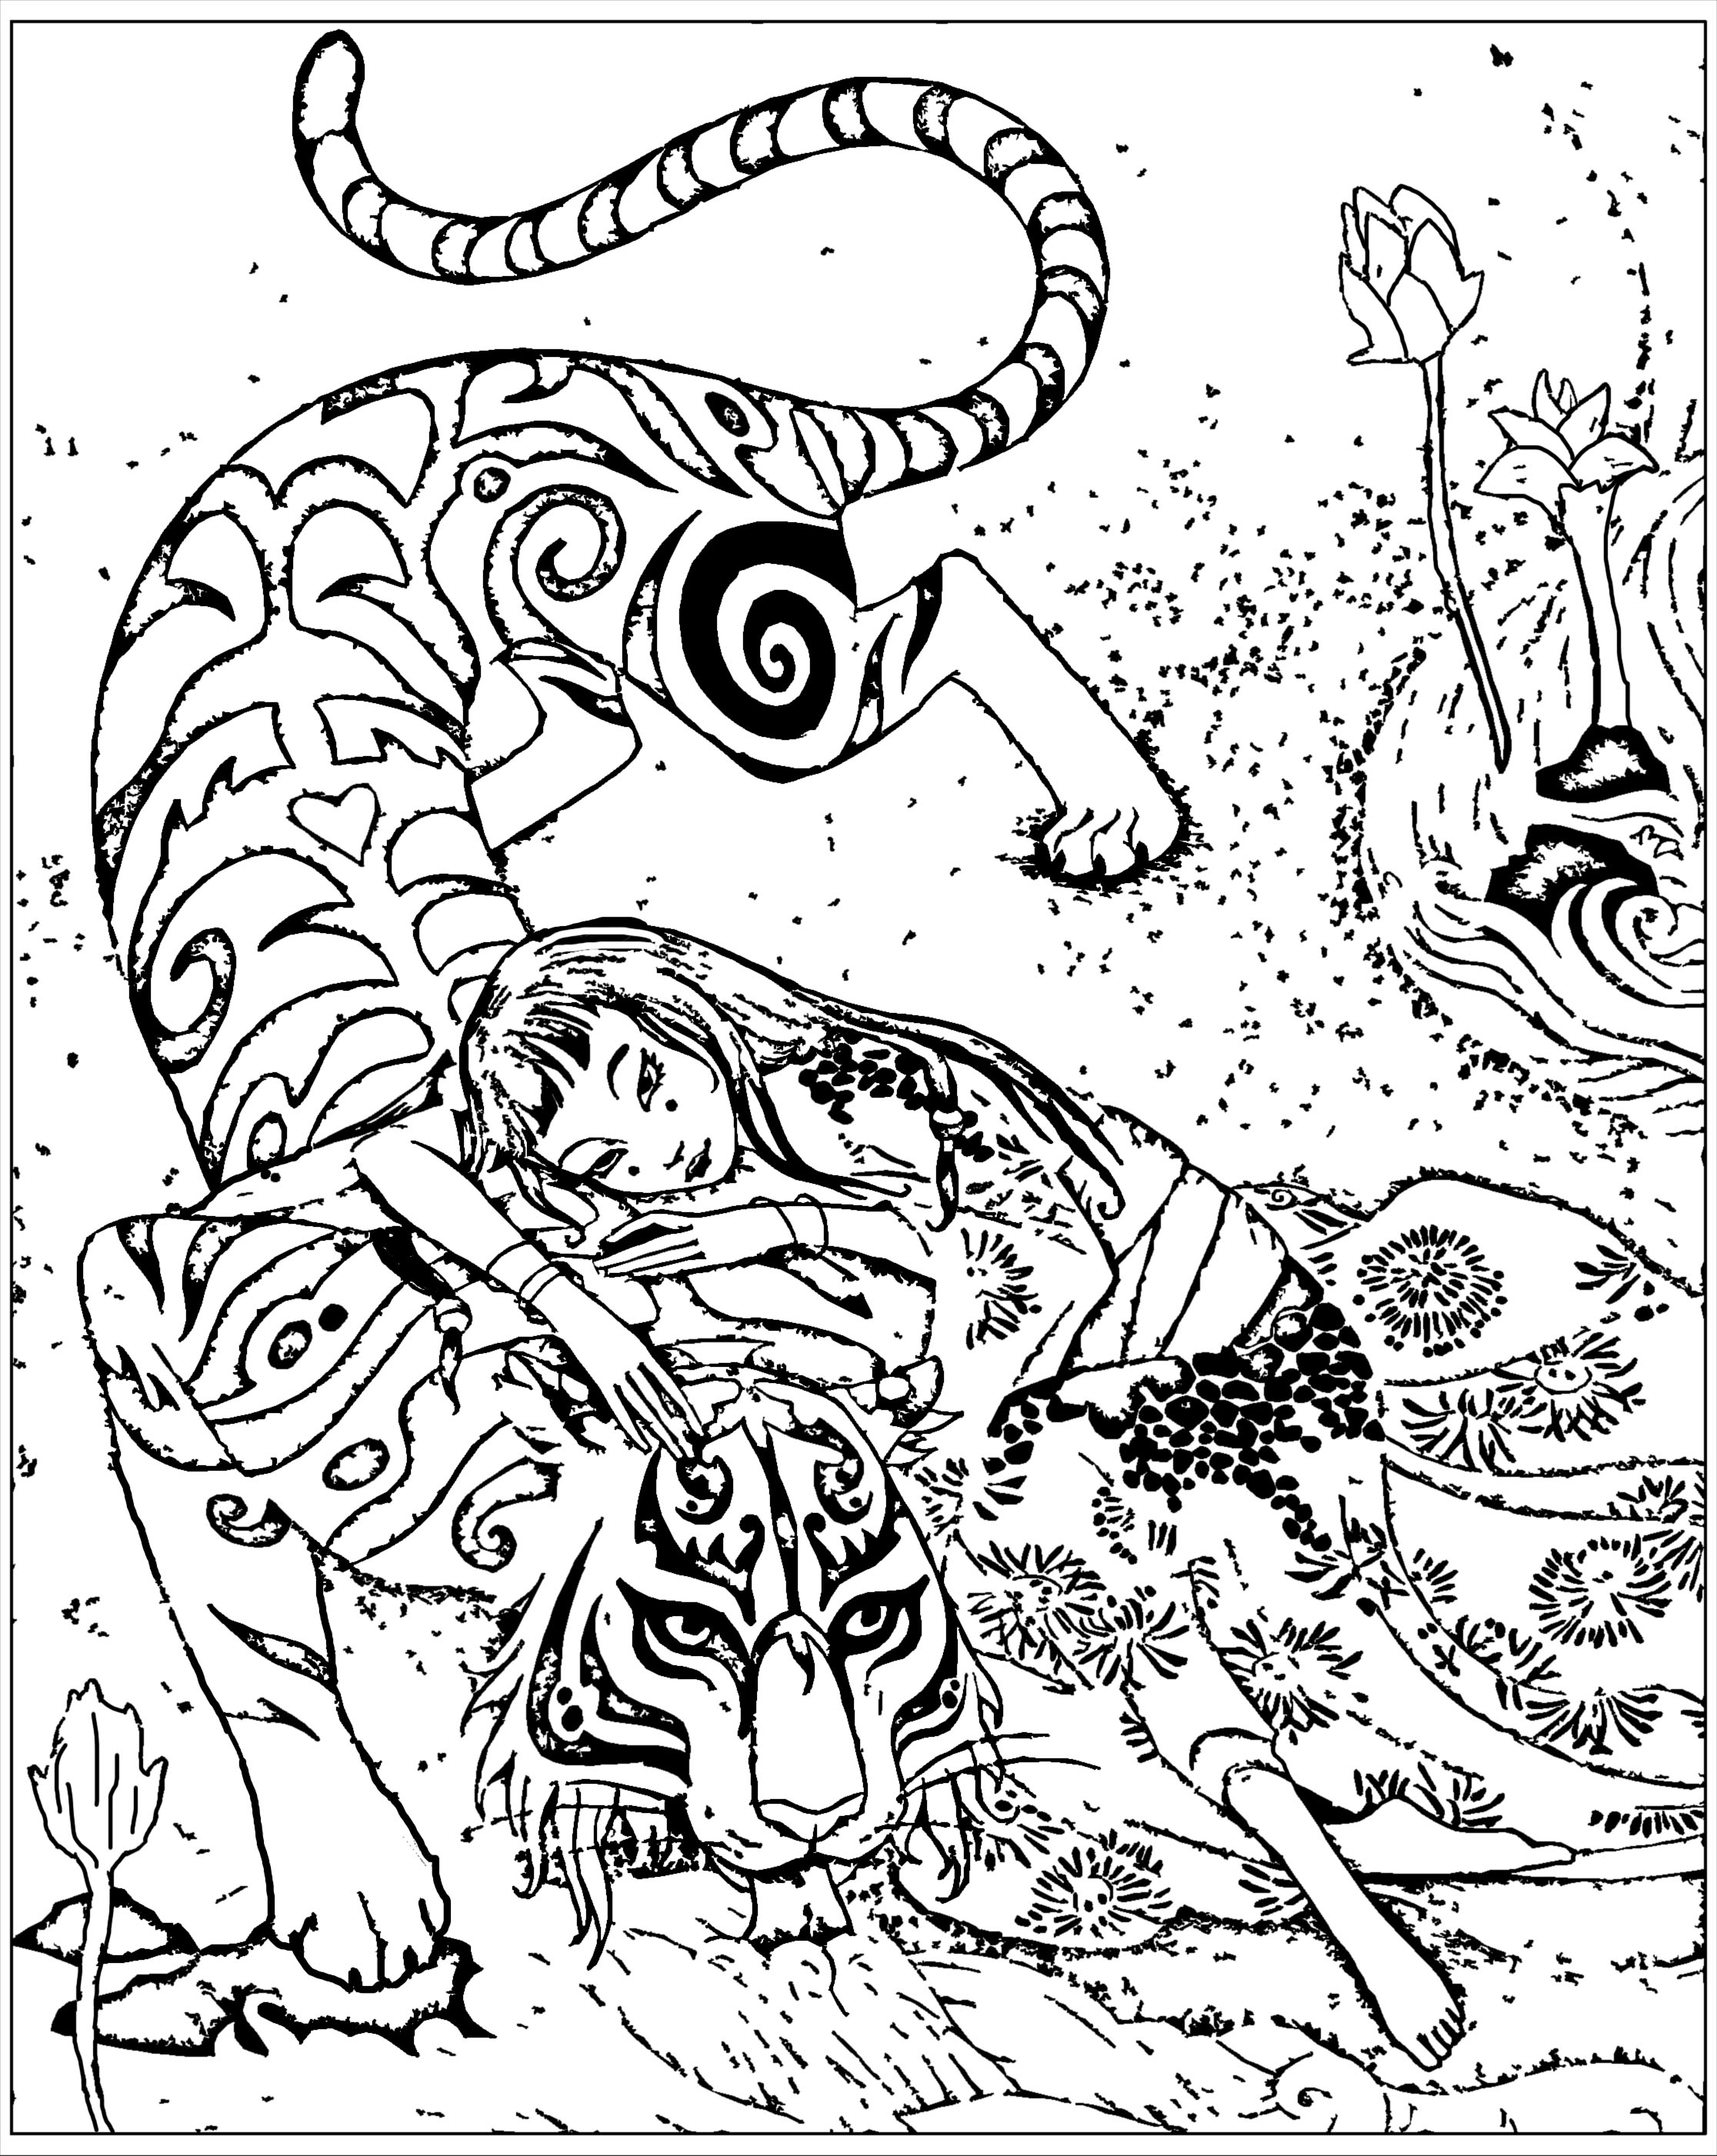 Coloriage inspiré du livre Le tigre dévoué, de Qi feng Shen. Qi feng Shen est un écrivain chinois connu pour son recueil d’une centaine d'histoires mêlant le surnaturel aux réalités sociales de l’époque ('Xieduo', 1792) : des textes  avec des personnages évoluant dans des intrigues pleines de finesse et d’intelligence